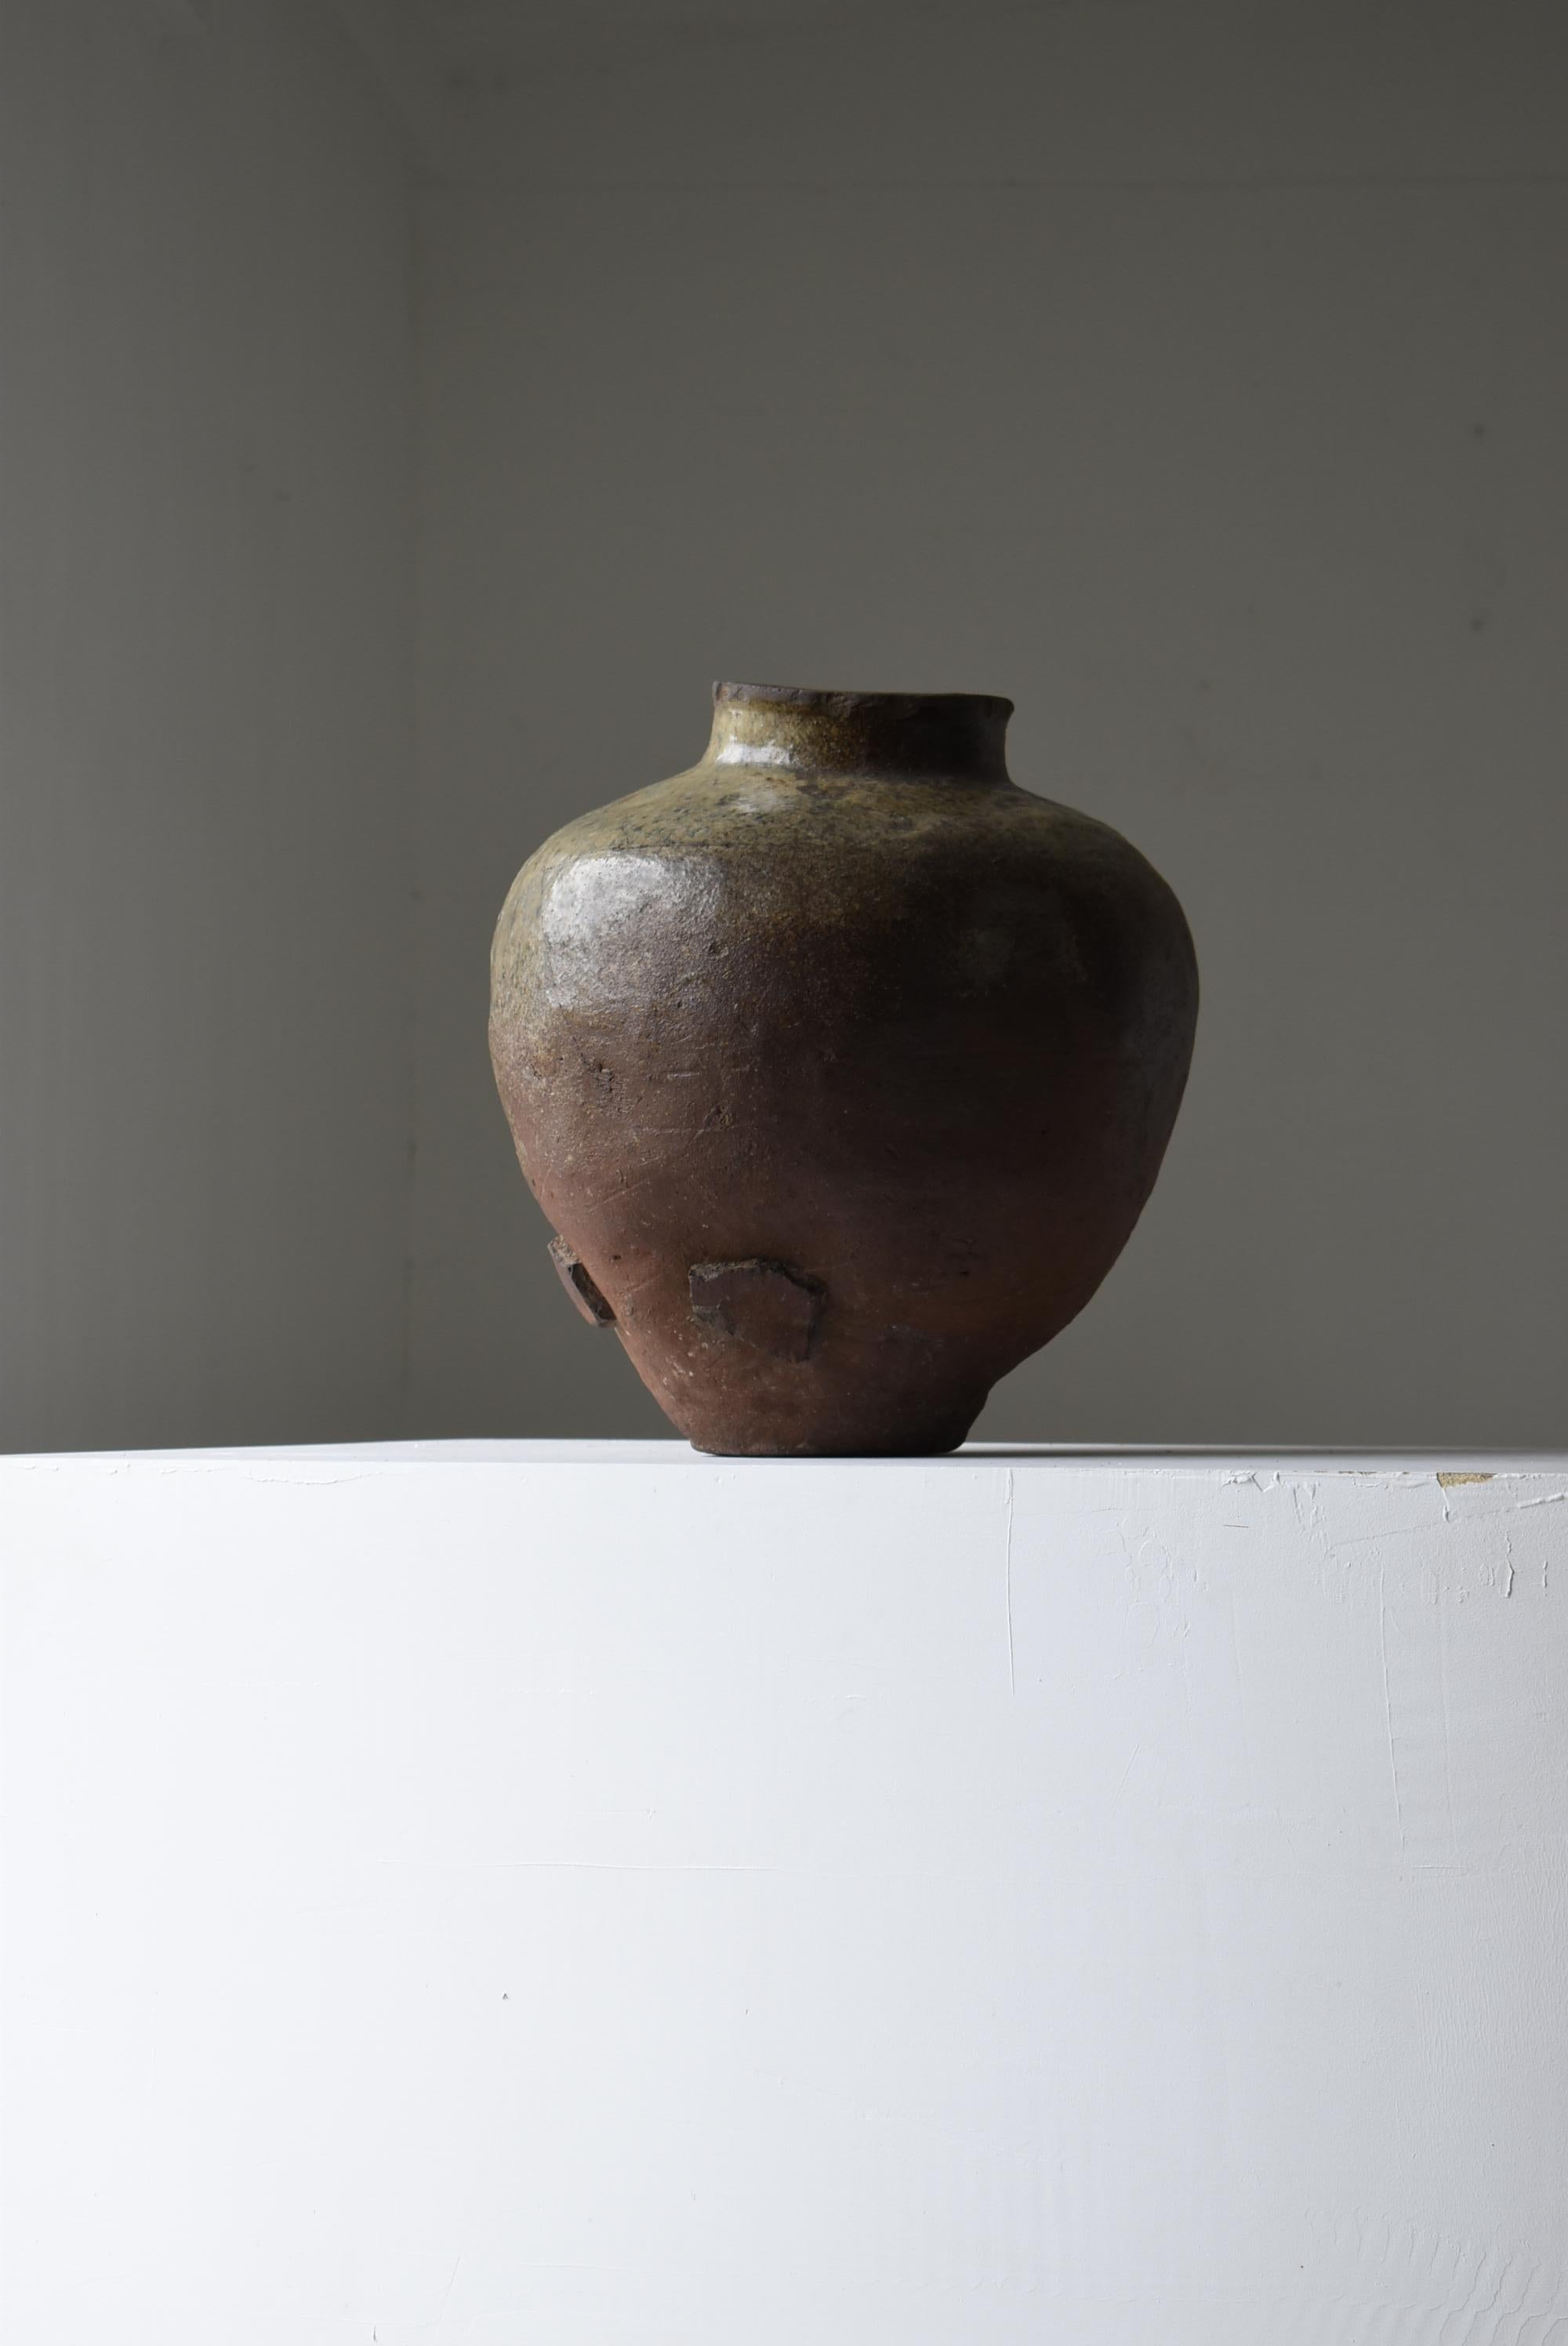 Japanese Old Pottery 1700s-1800s/Antique Flower Vase Vessel Jar Tsubo Wabisabi 9